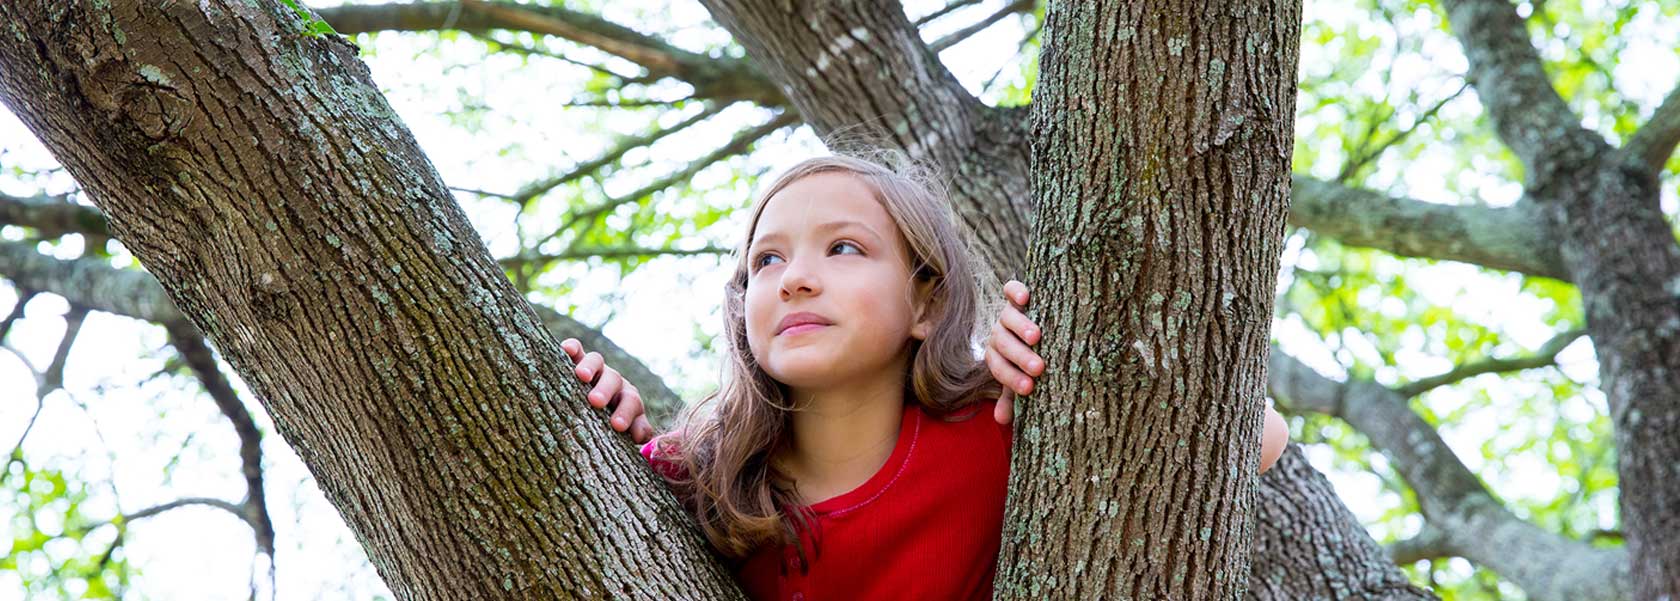 a girl climbing a tree